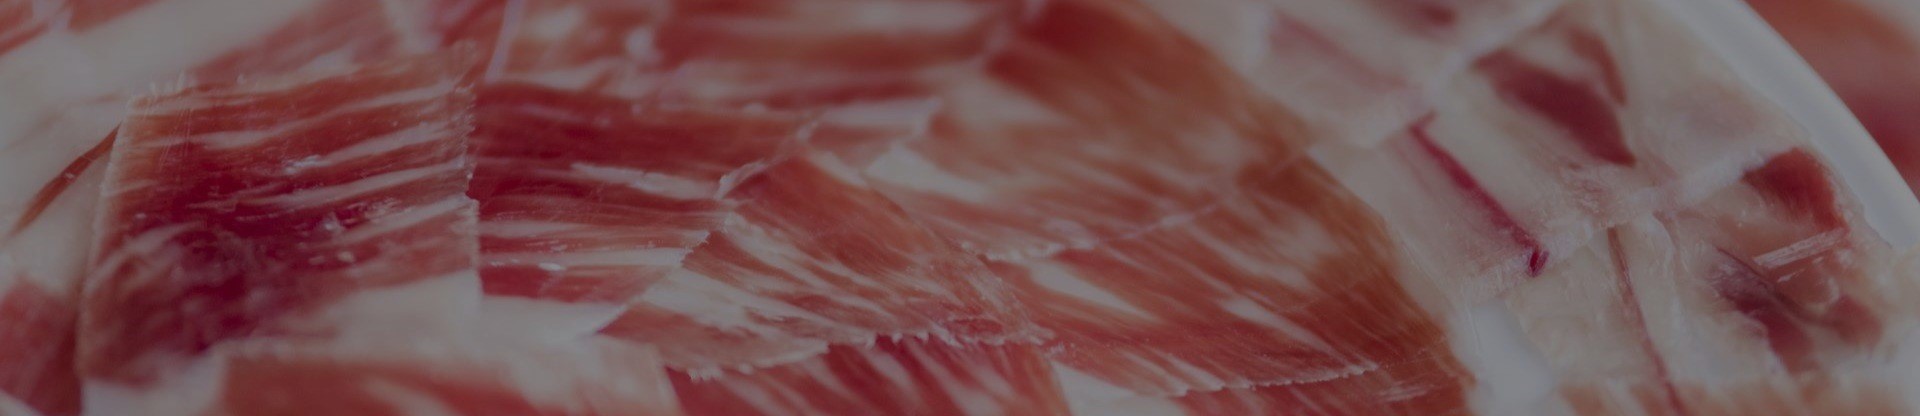 Imagen de fondo, jamón perfectamente cortado y presentado en un plato de jamón